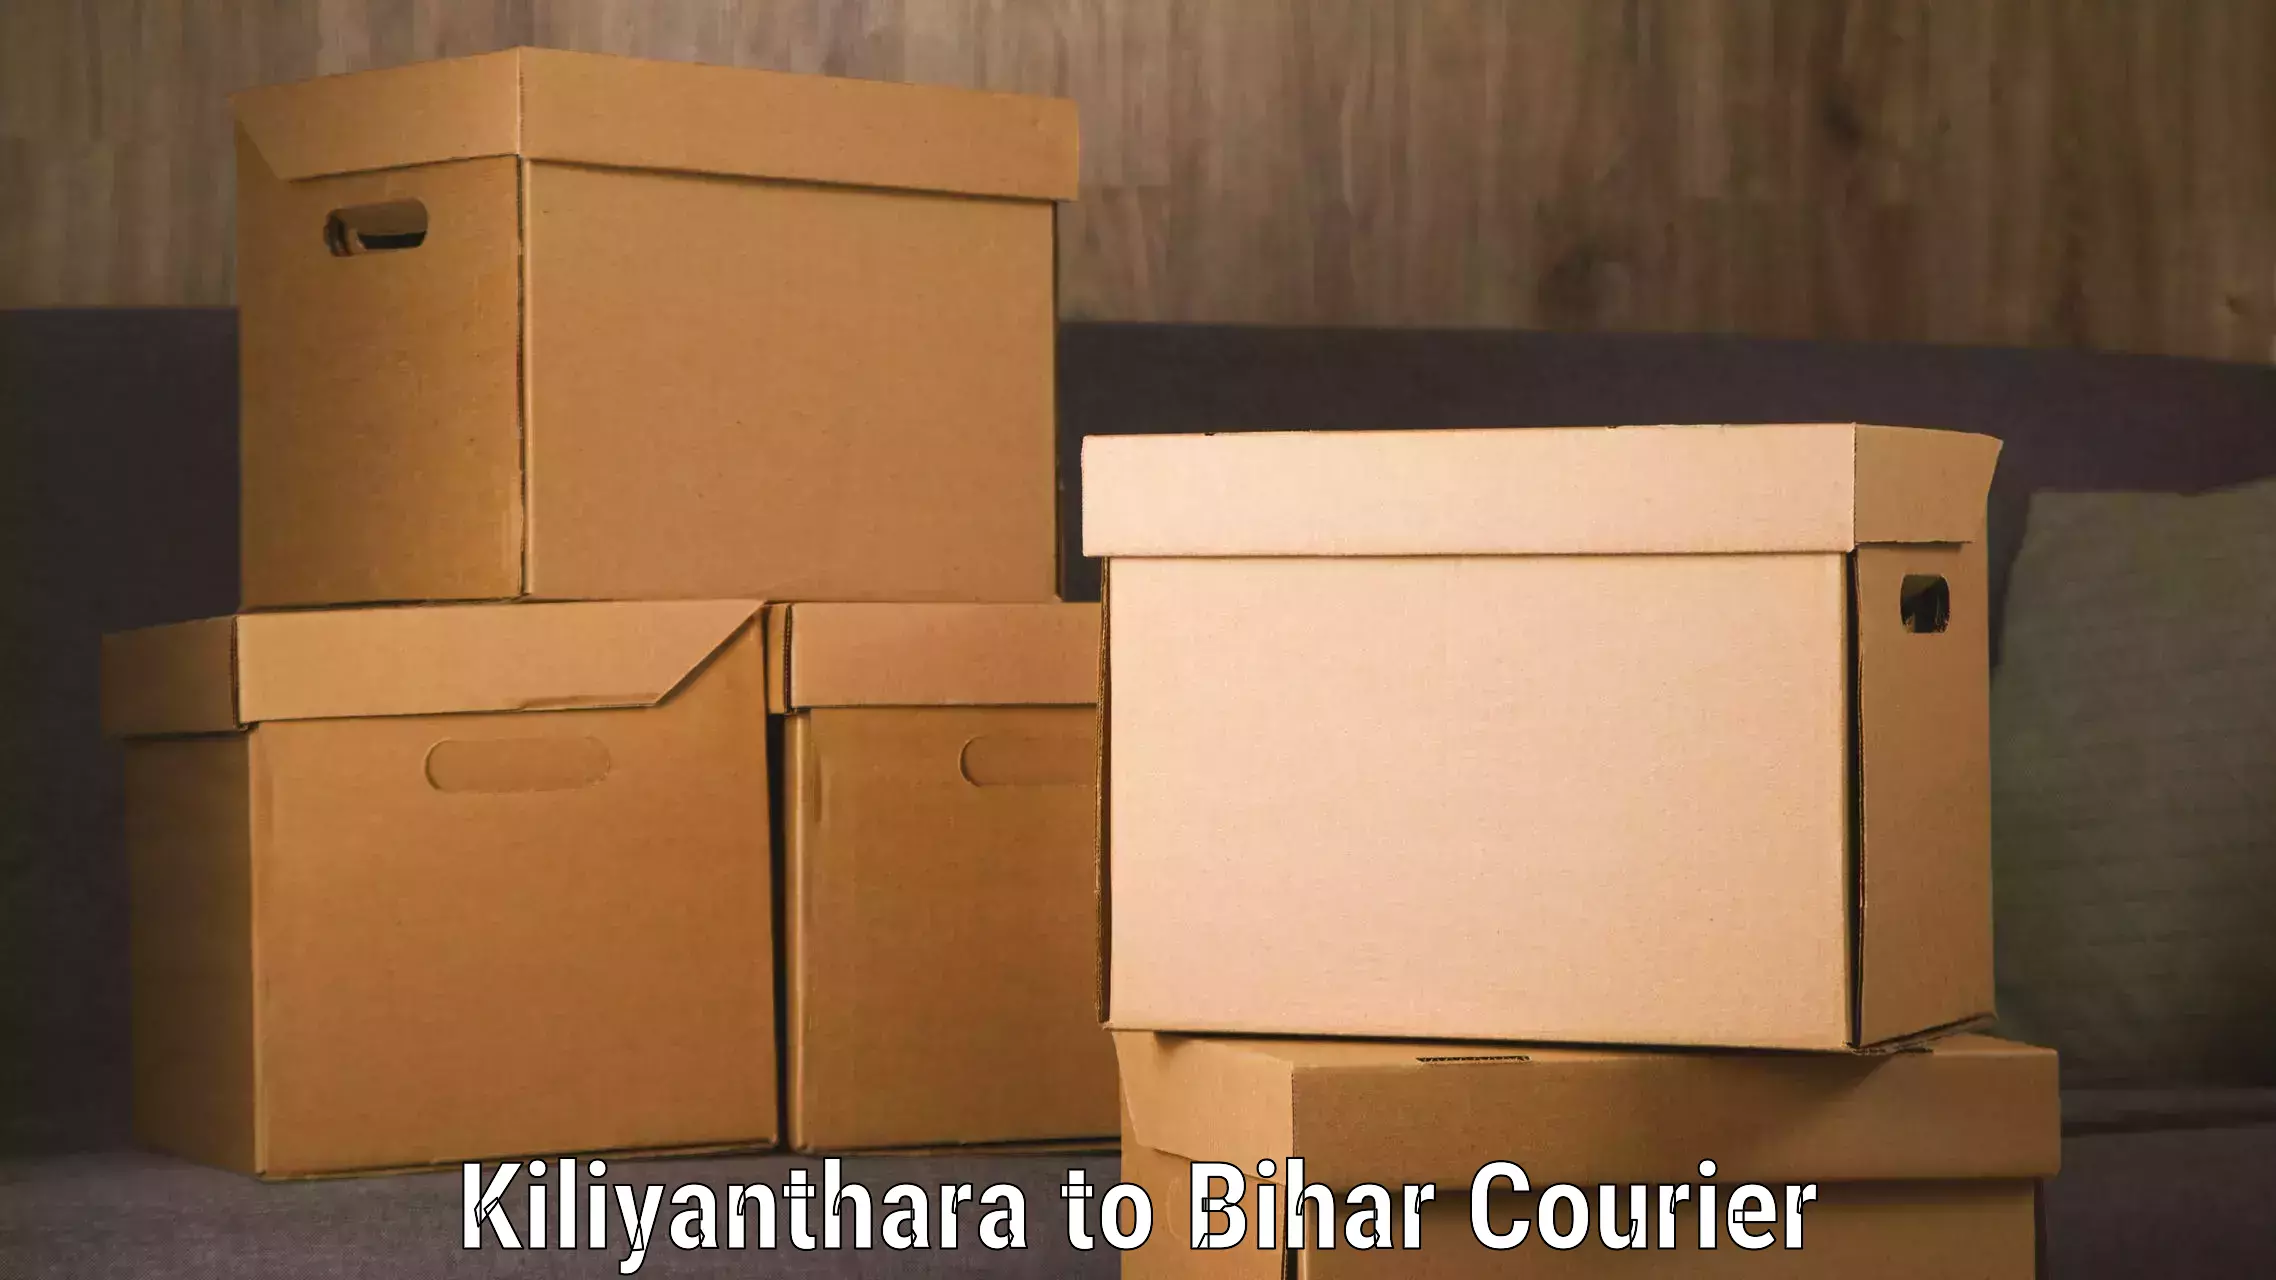 Courier service comparison Kiliyanthara to Nalanda